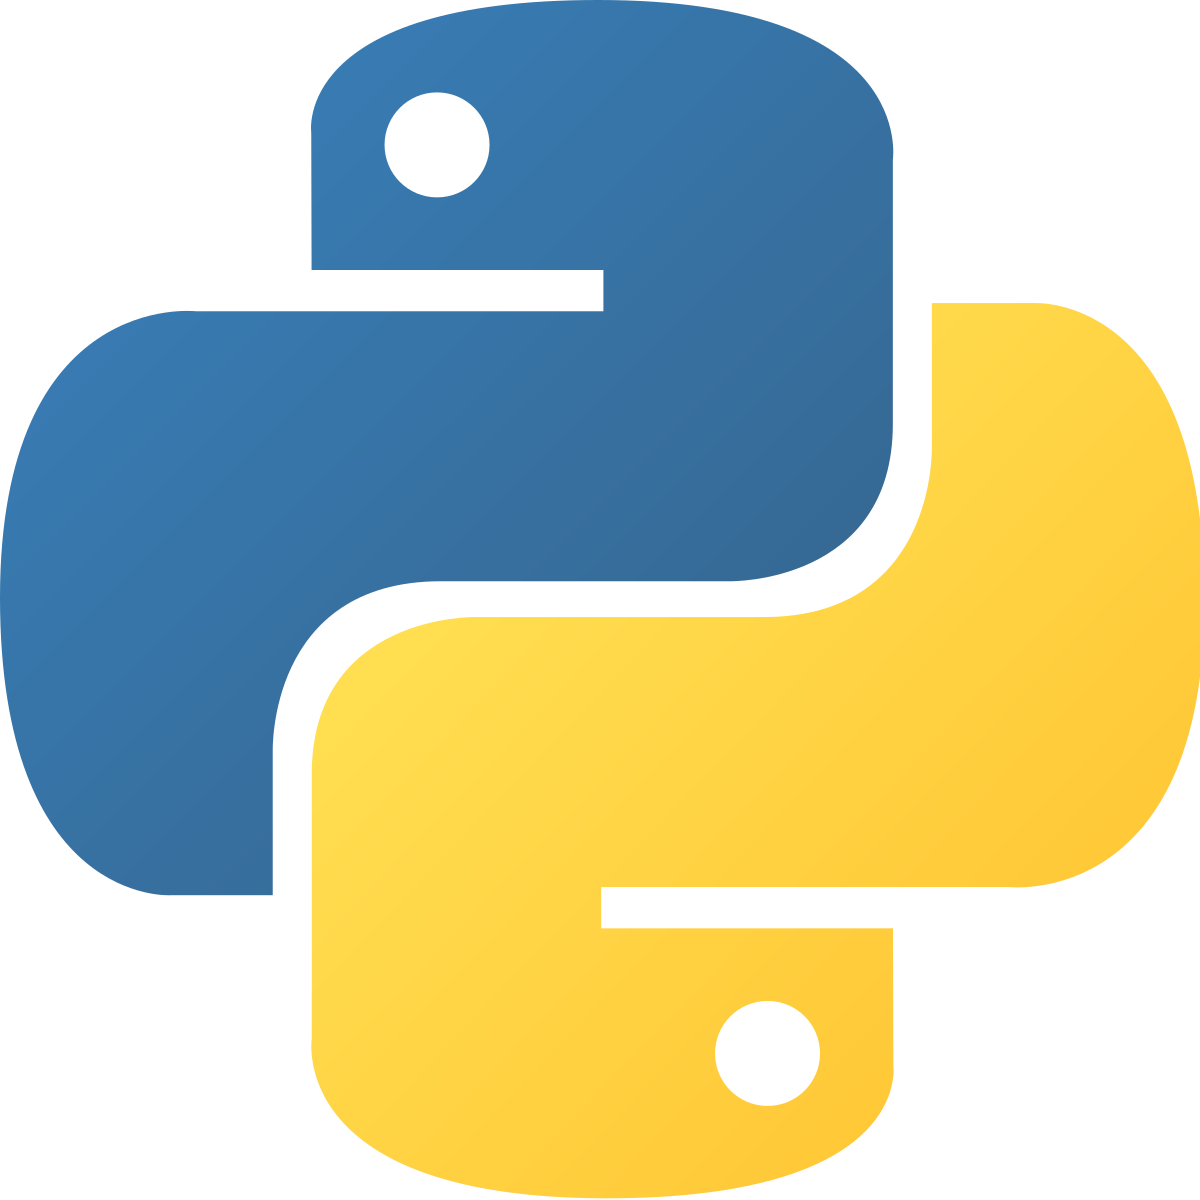 Parsing Windows event log files (.evtx) using Python